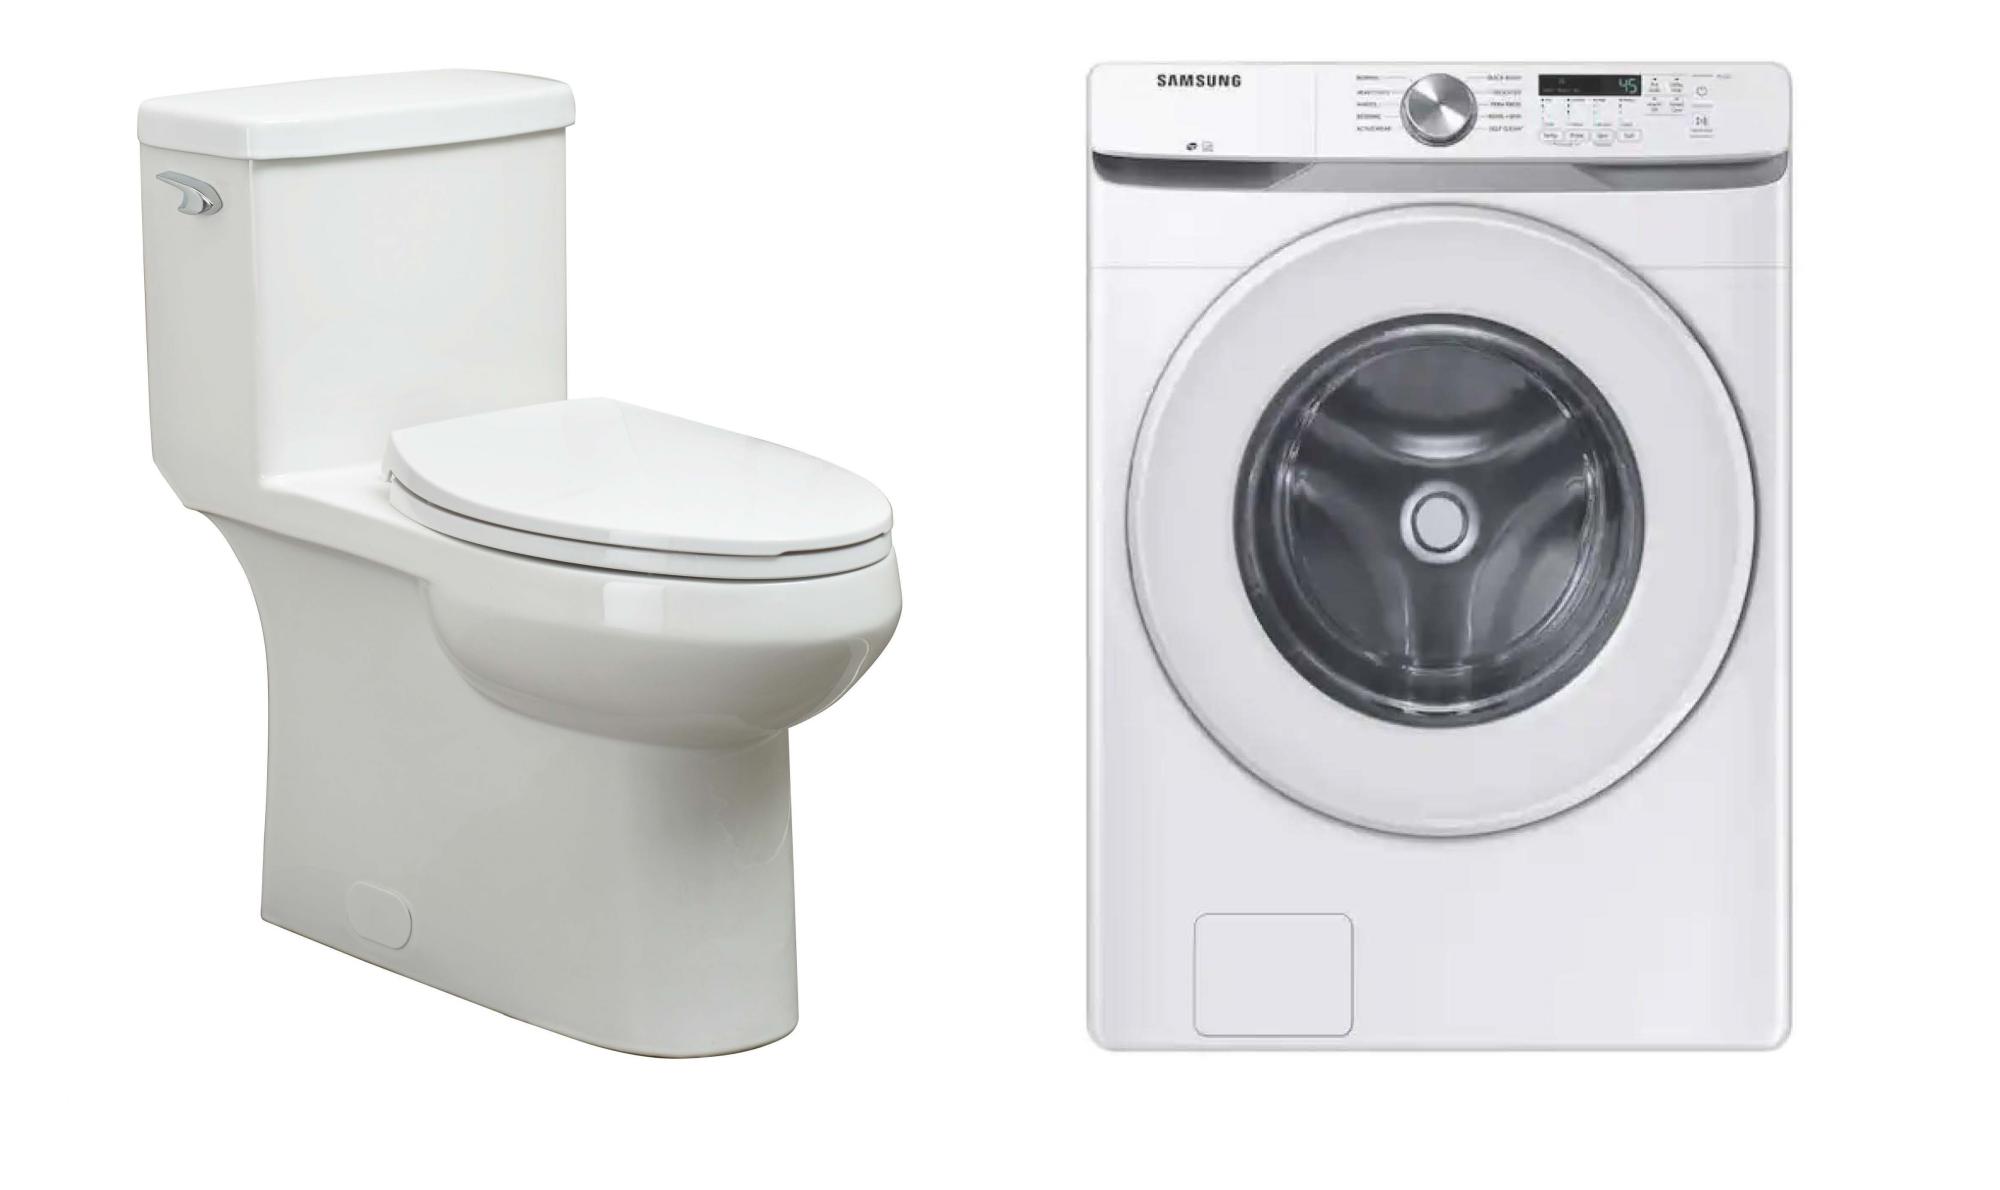 Toilet and washing machine rebate image